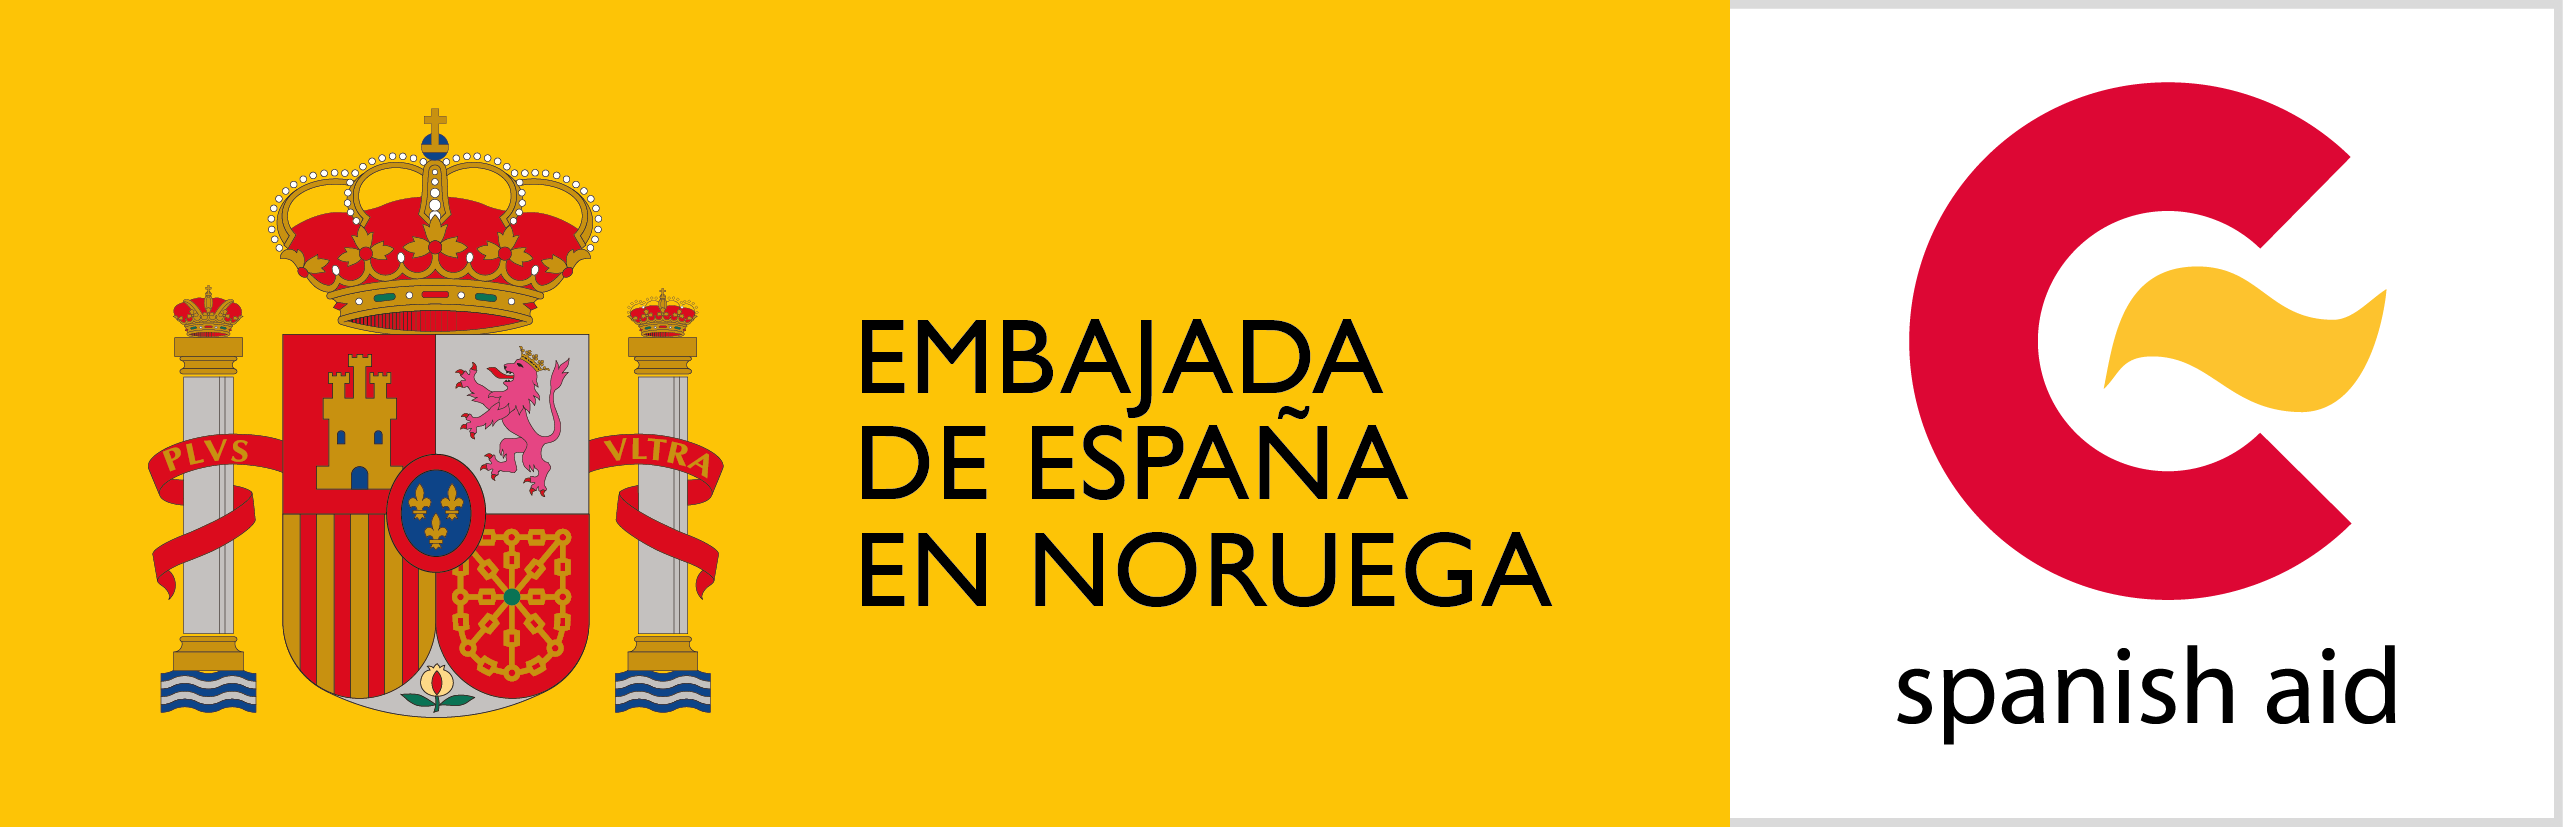 Spanias ambassade